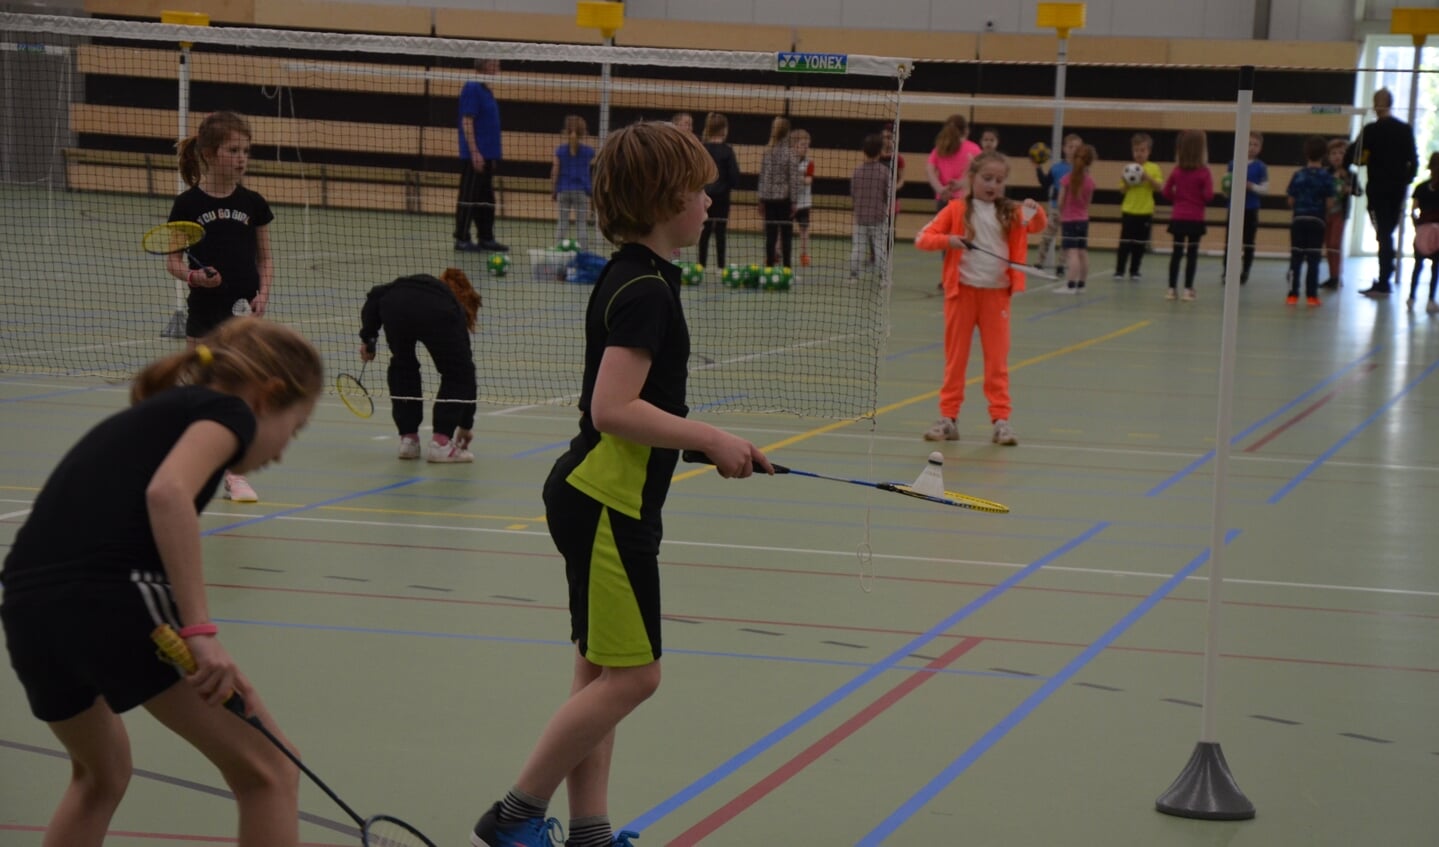 Kennismaken met verschillende sporten, zoals badminton